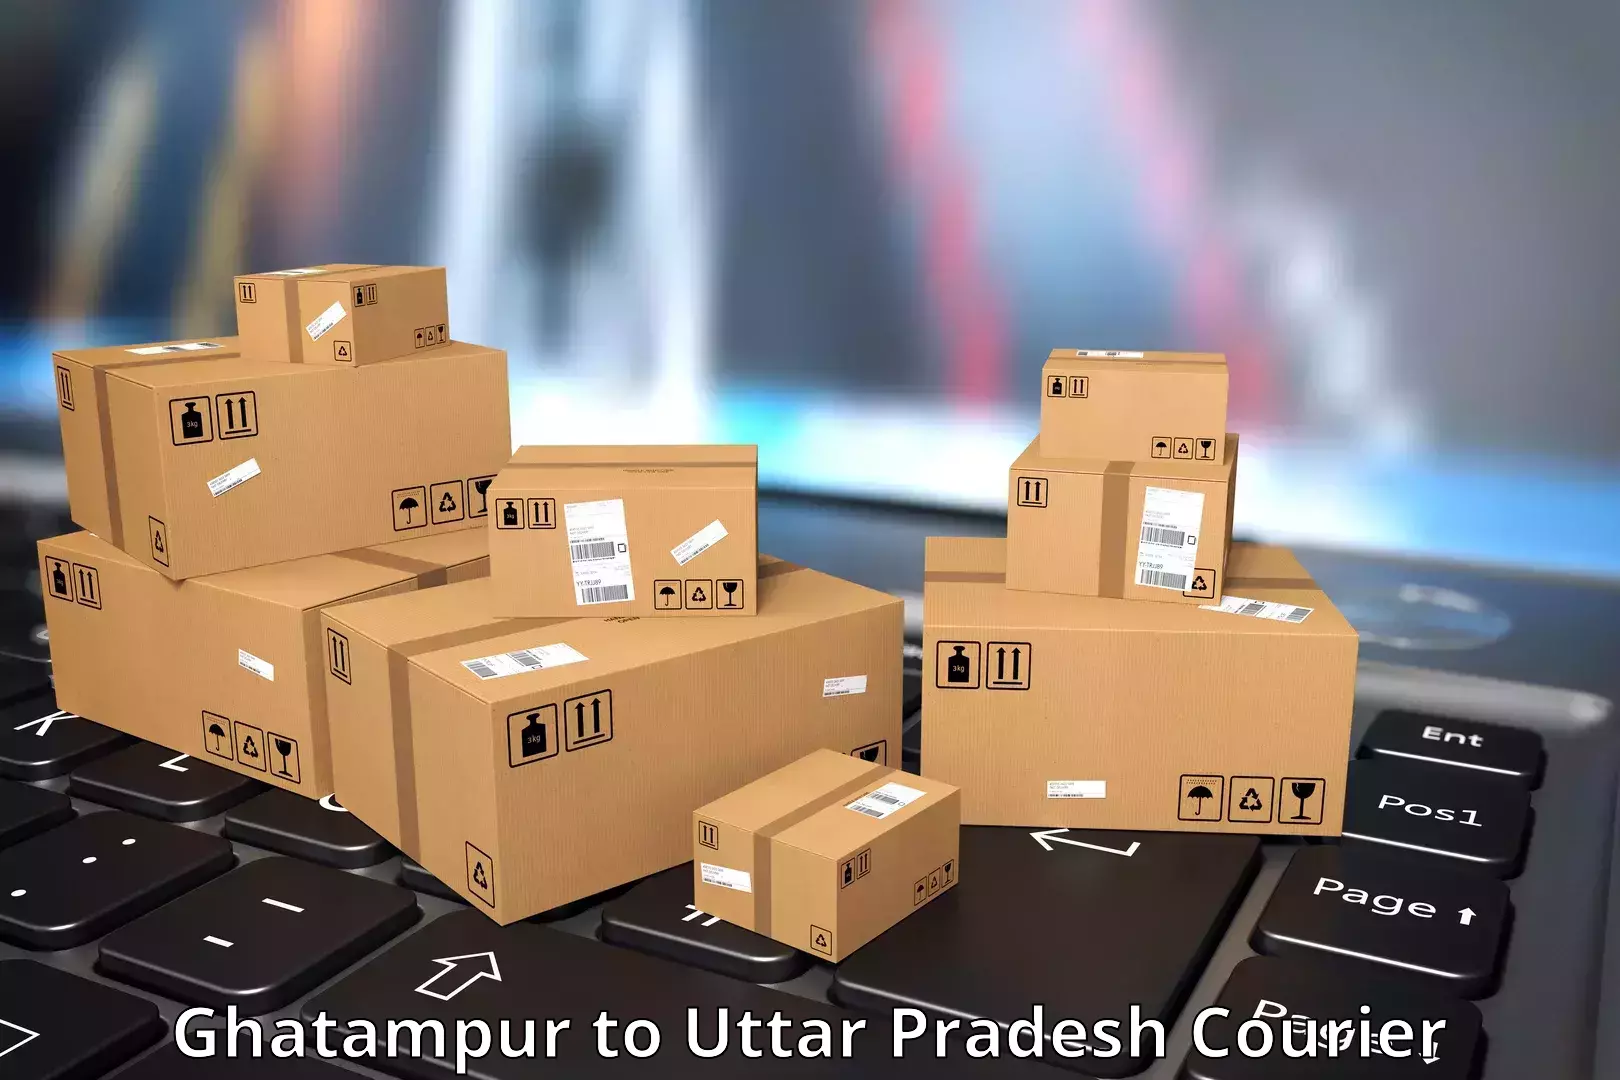 Tech-enabled shipping Ghatampur to Saifai